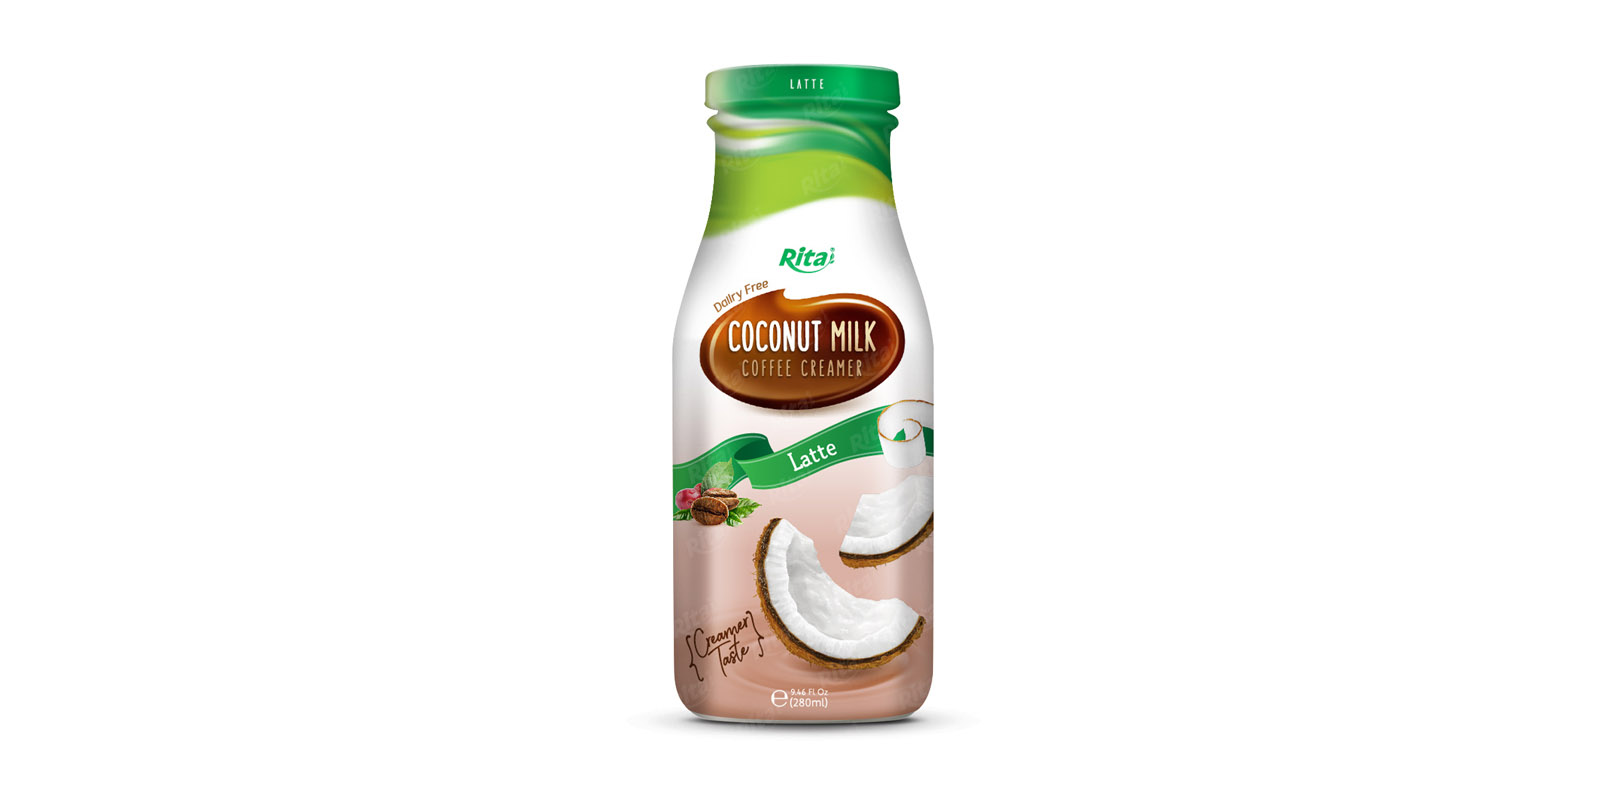  Coconut milk Coffee Creamer in Glass bottle